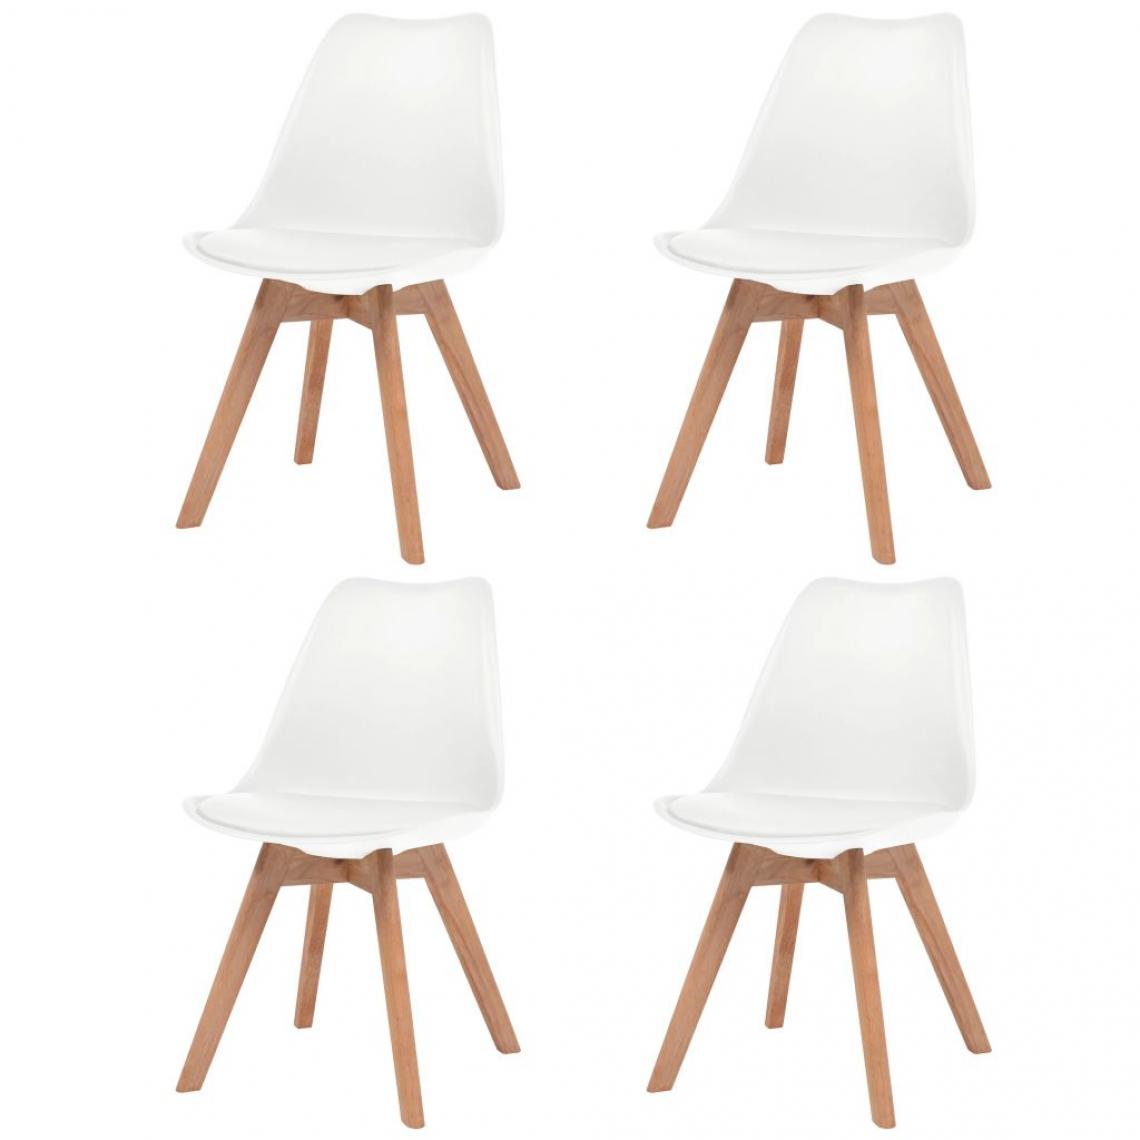 Decoshop26 - Lot de 4 chaises de salle à manger cuisine design scandinave similicuir blanc CDS021251 - Chaises